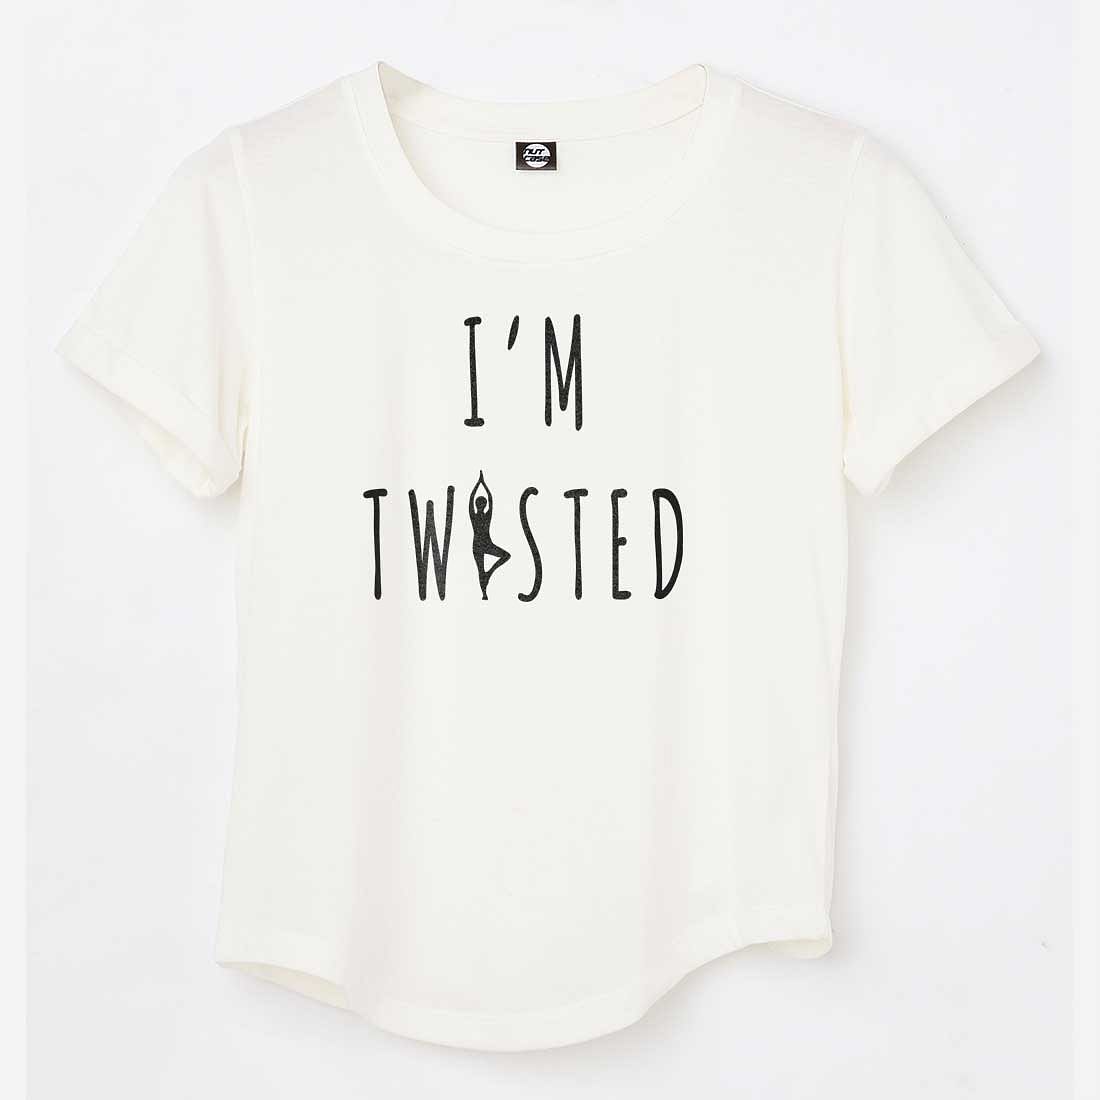 Nutcase yoga tshirts funny tees  - I'm Twisted Nutcase